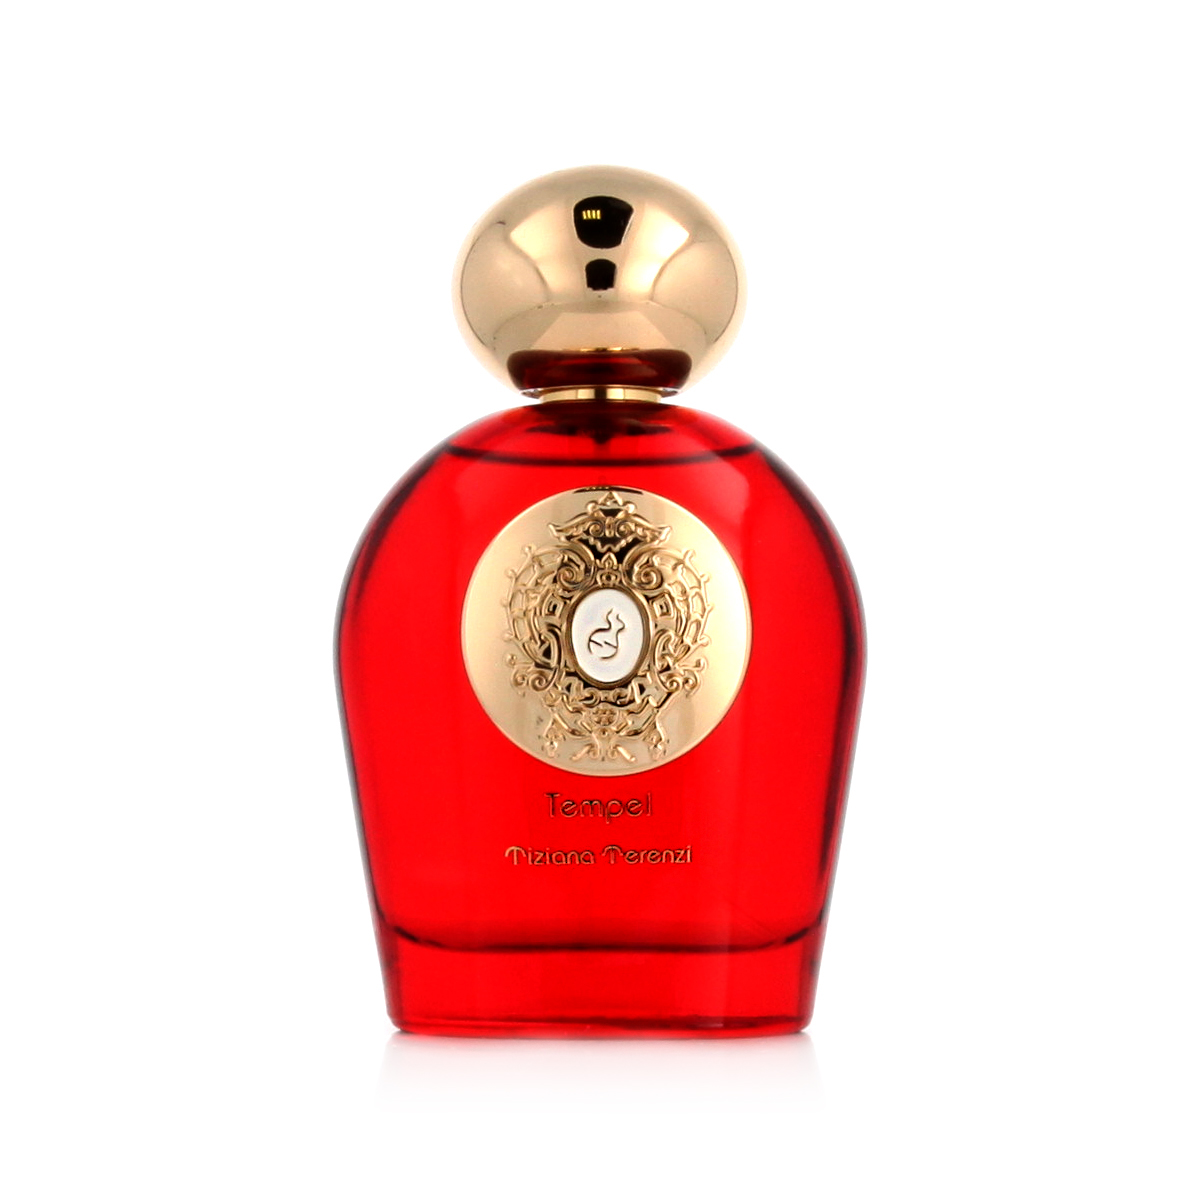 Tiziana Terenzi Wirtanen 5 ml NIŠINIAI kvepalų mėginukas (atomaizeris) Unisex Parfum